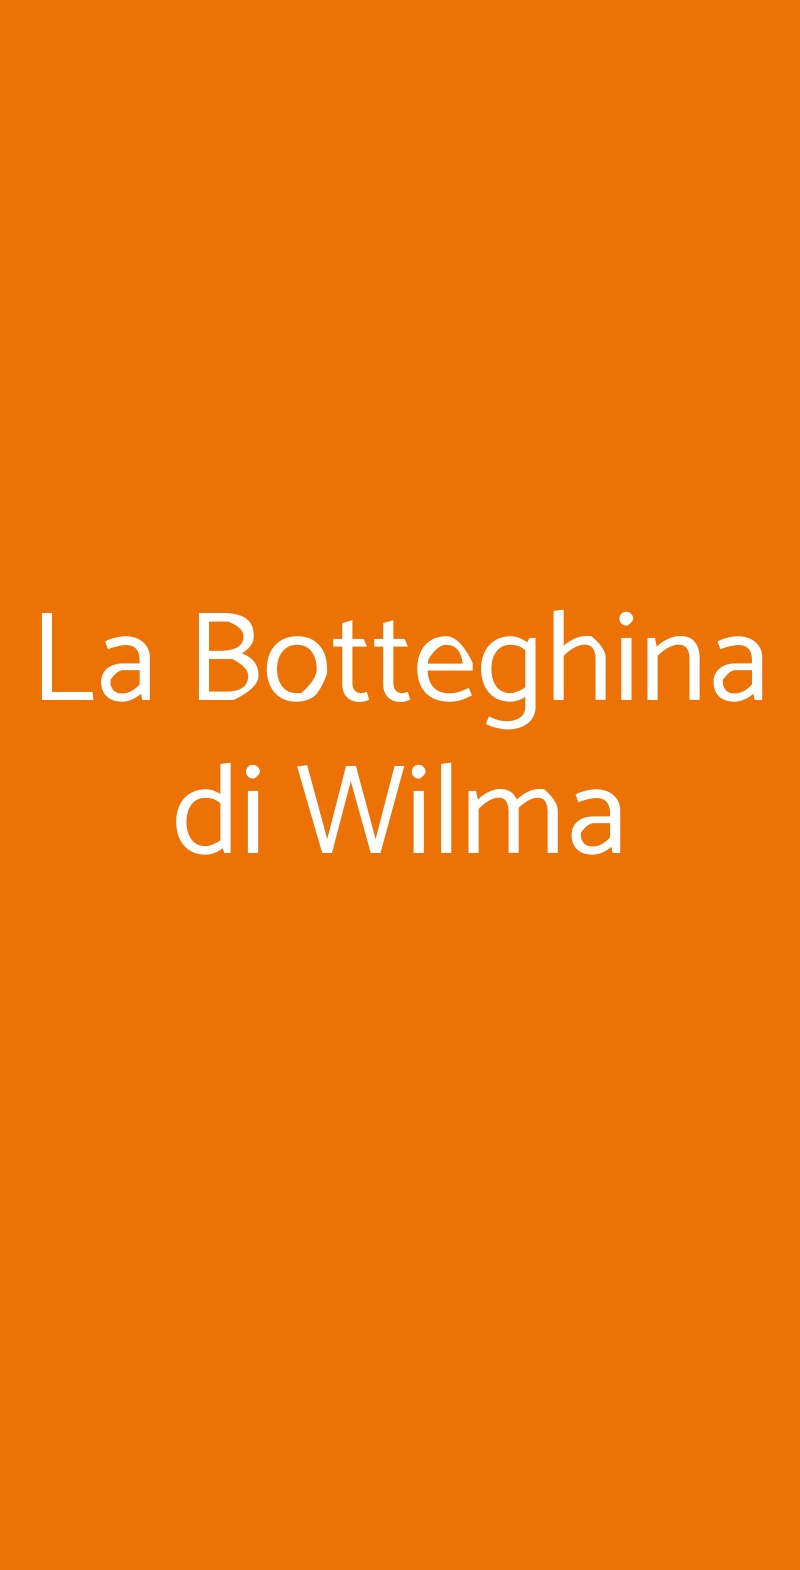 La Botteghina di Wilma Certaldo menù 1 pagina